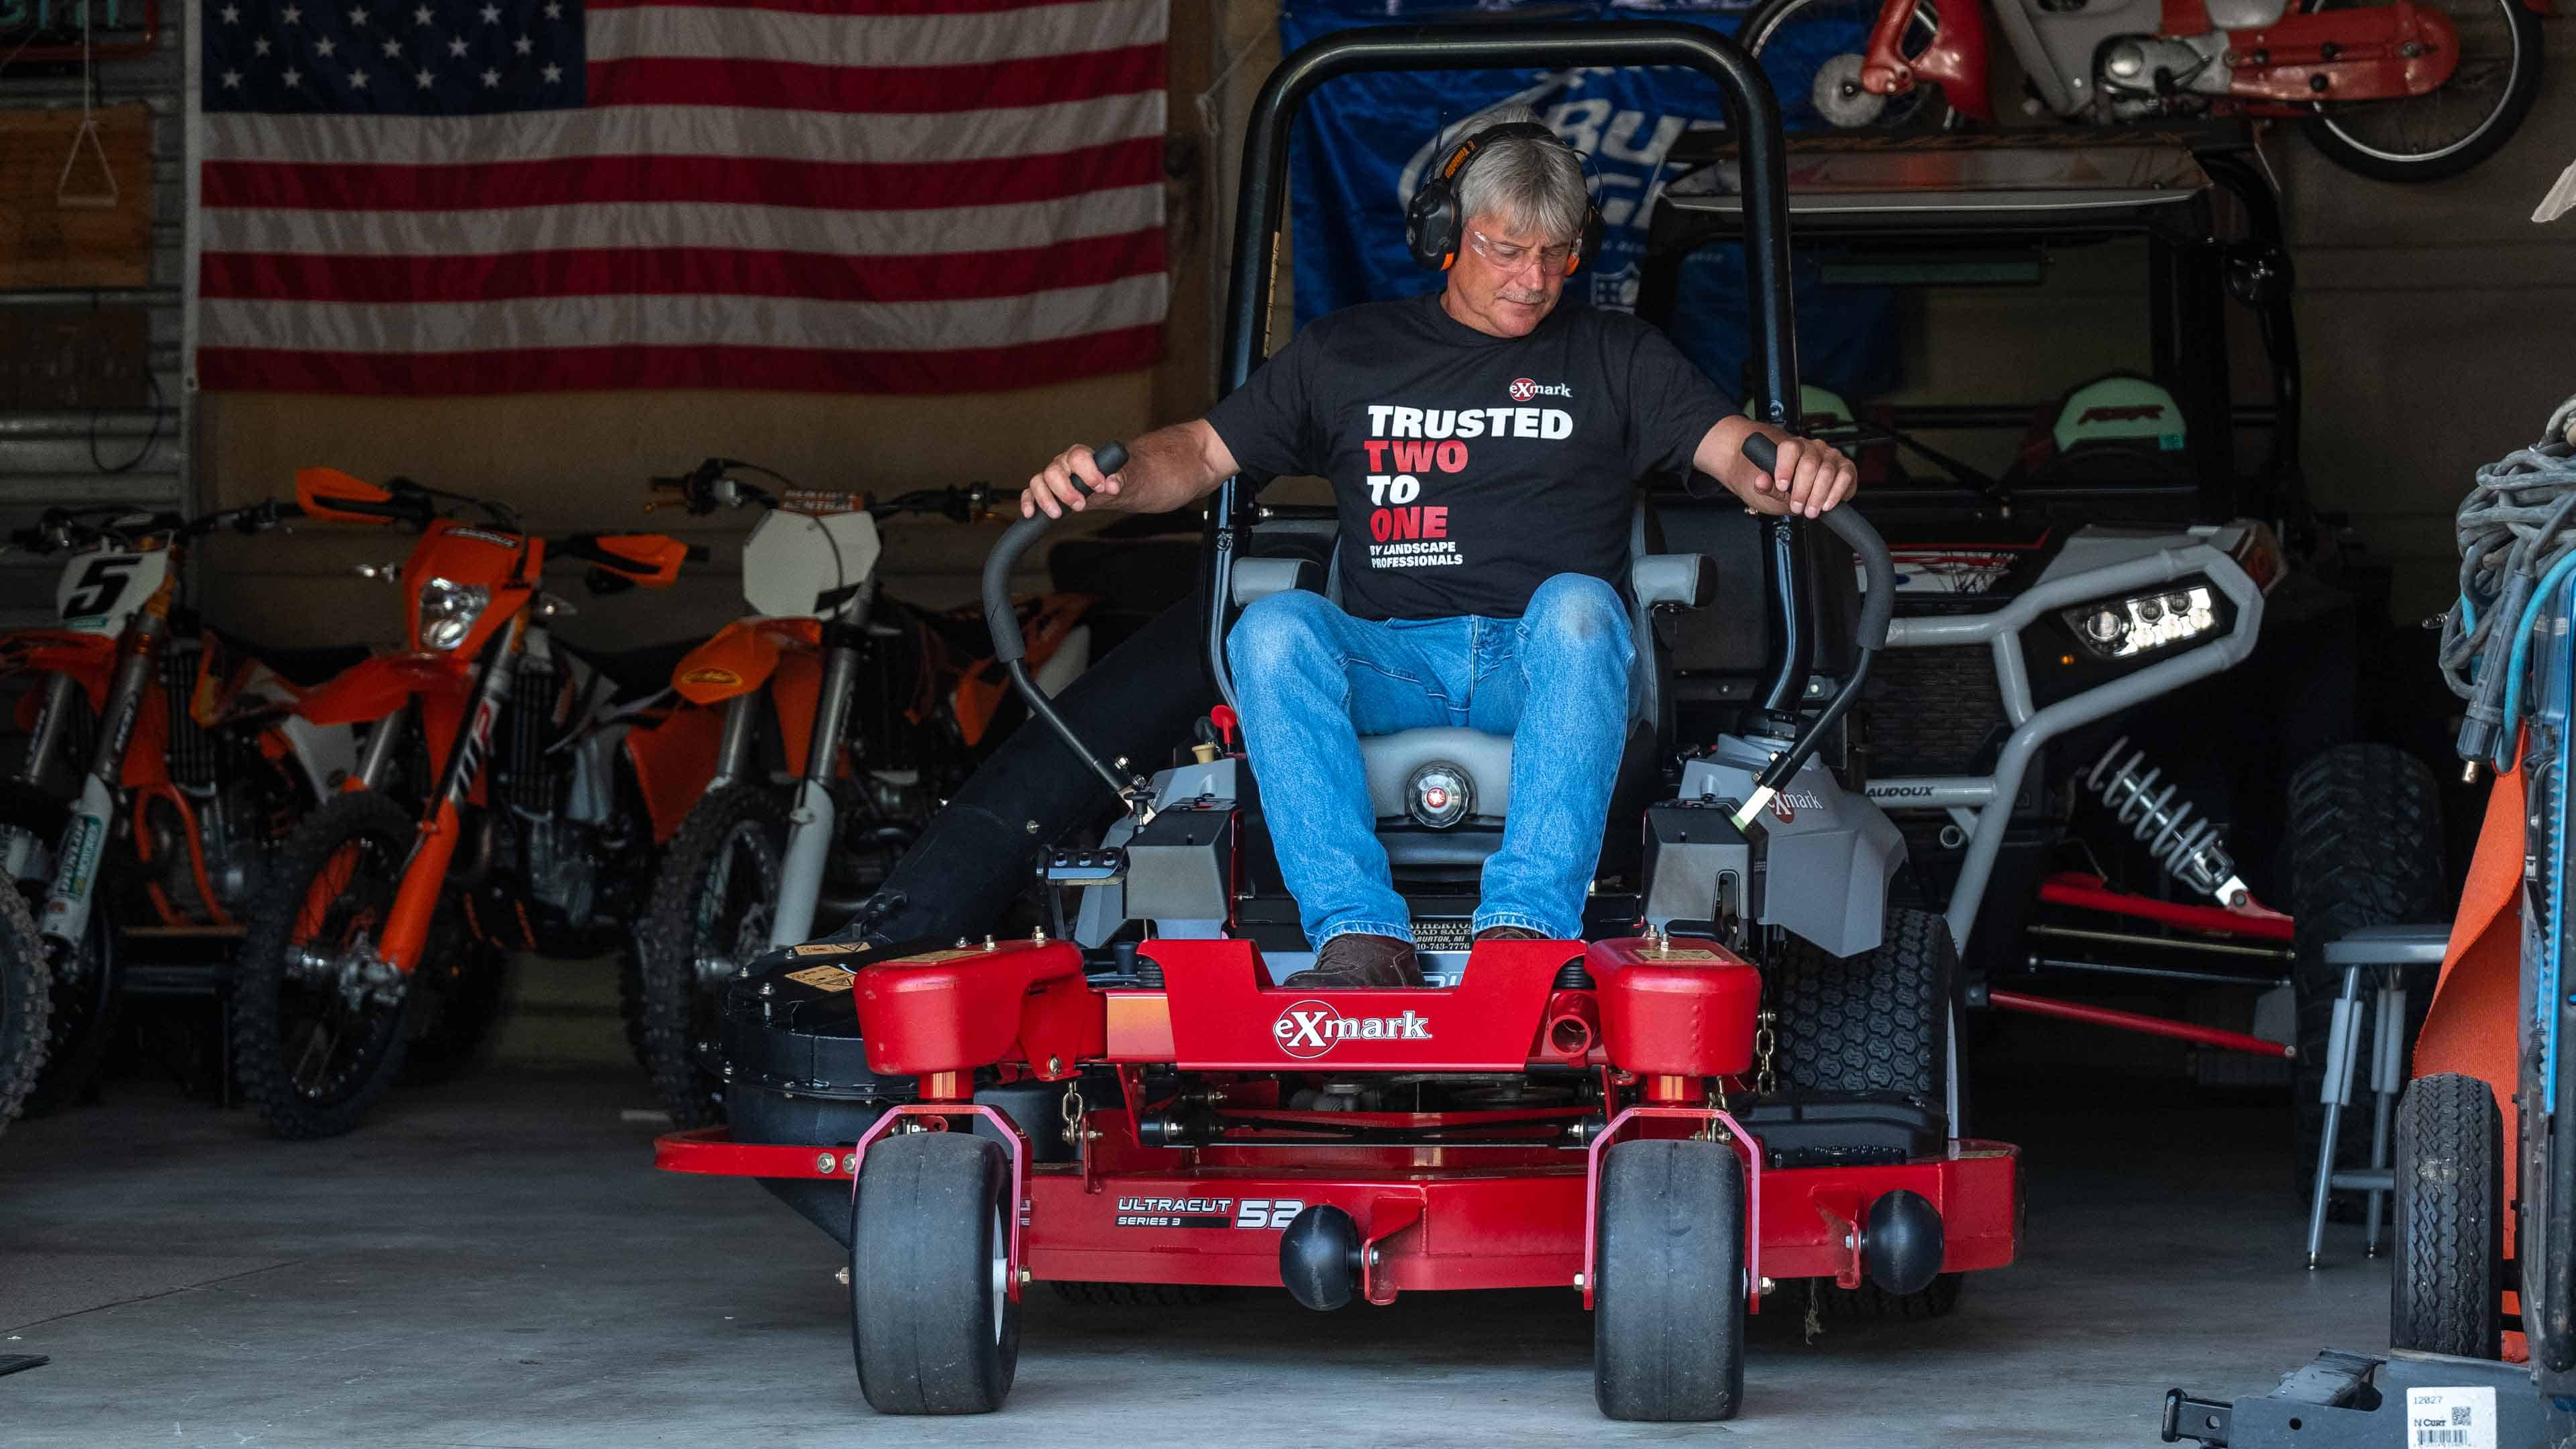 Man on Exmark mower in garage